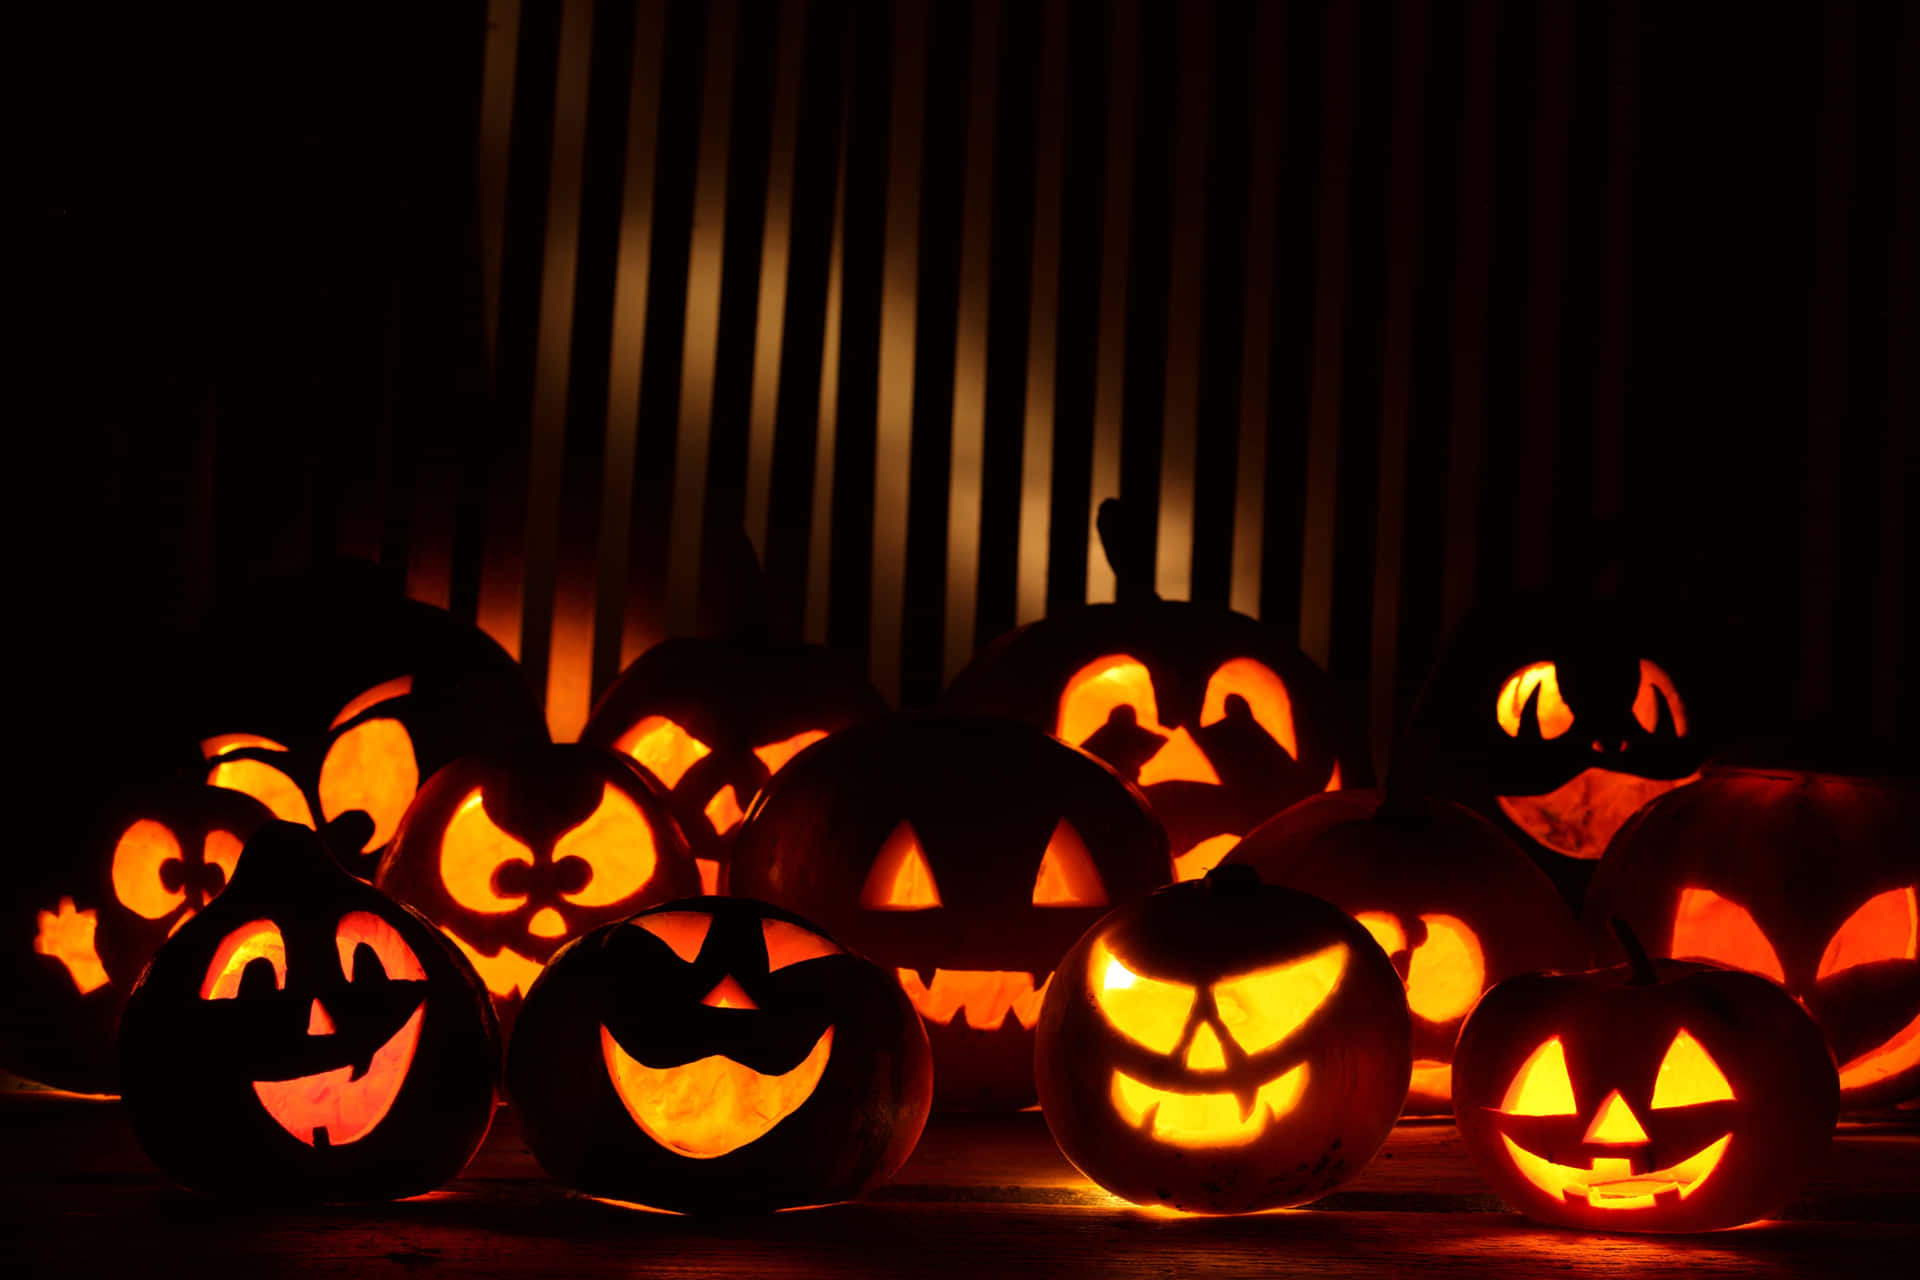 Unclassico Di Halloween - Intagliare Una Zucca Di Halloween